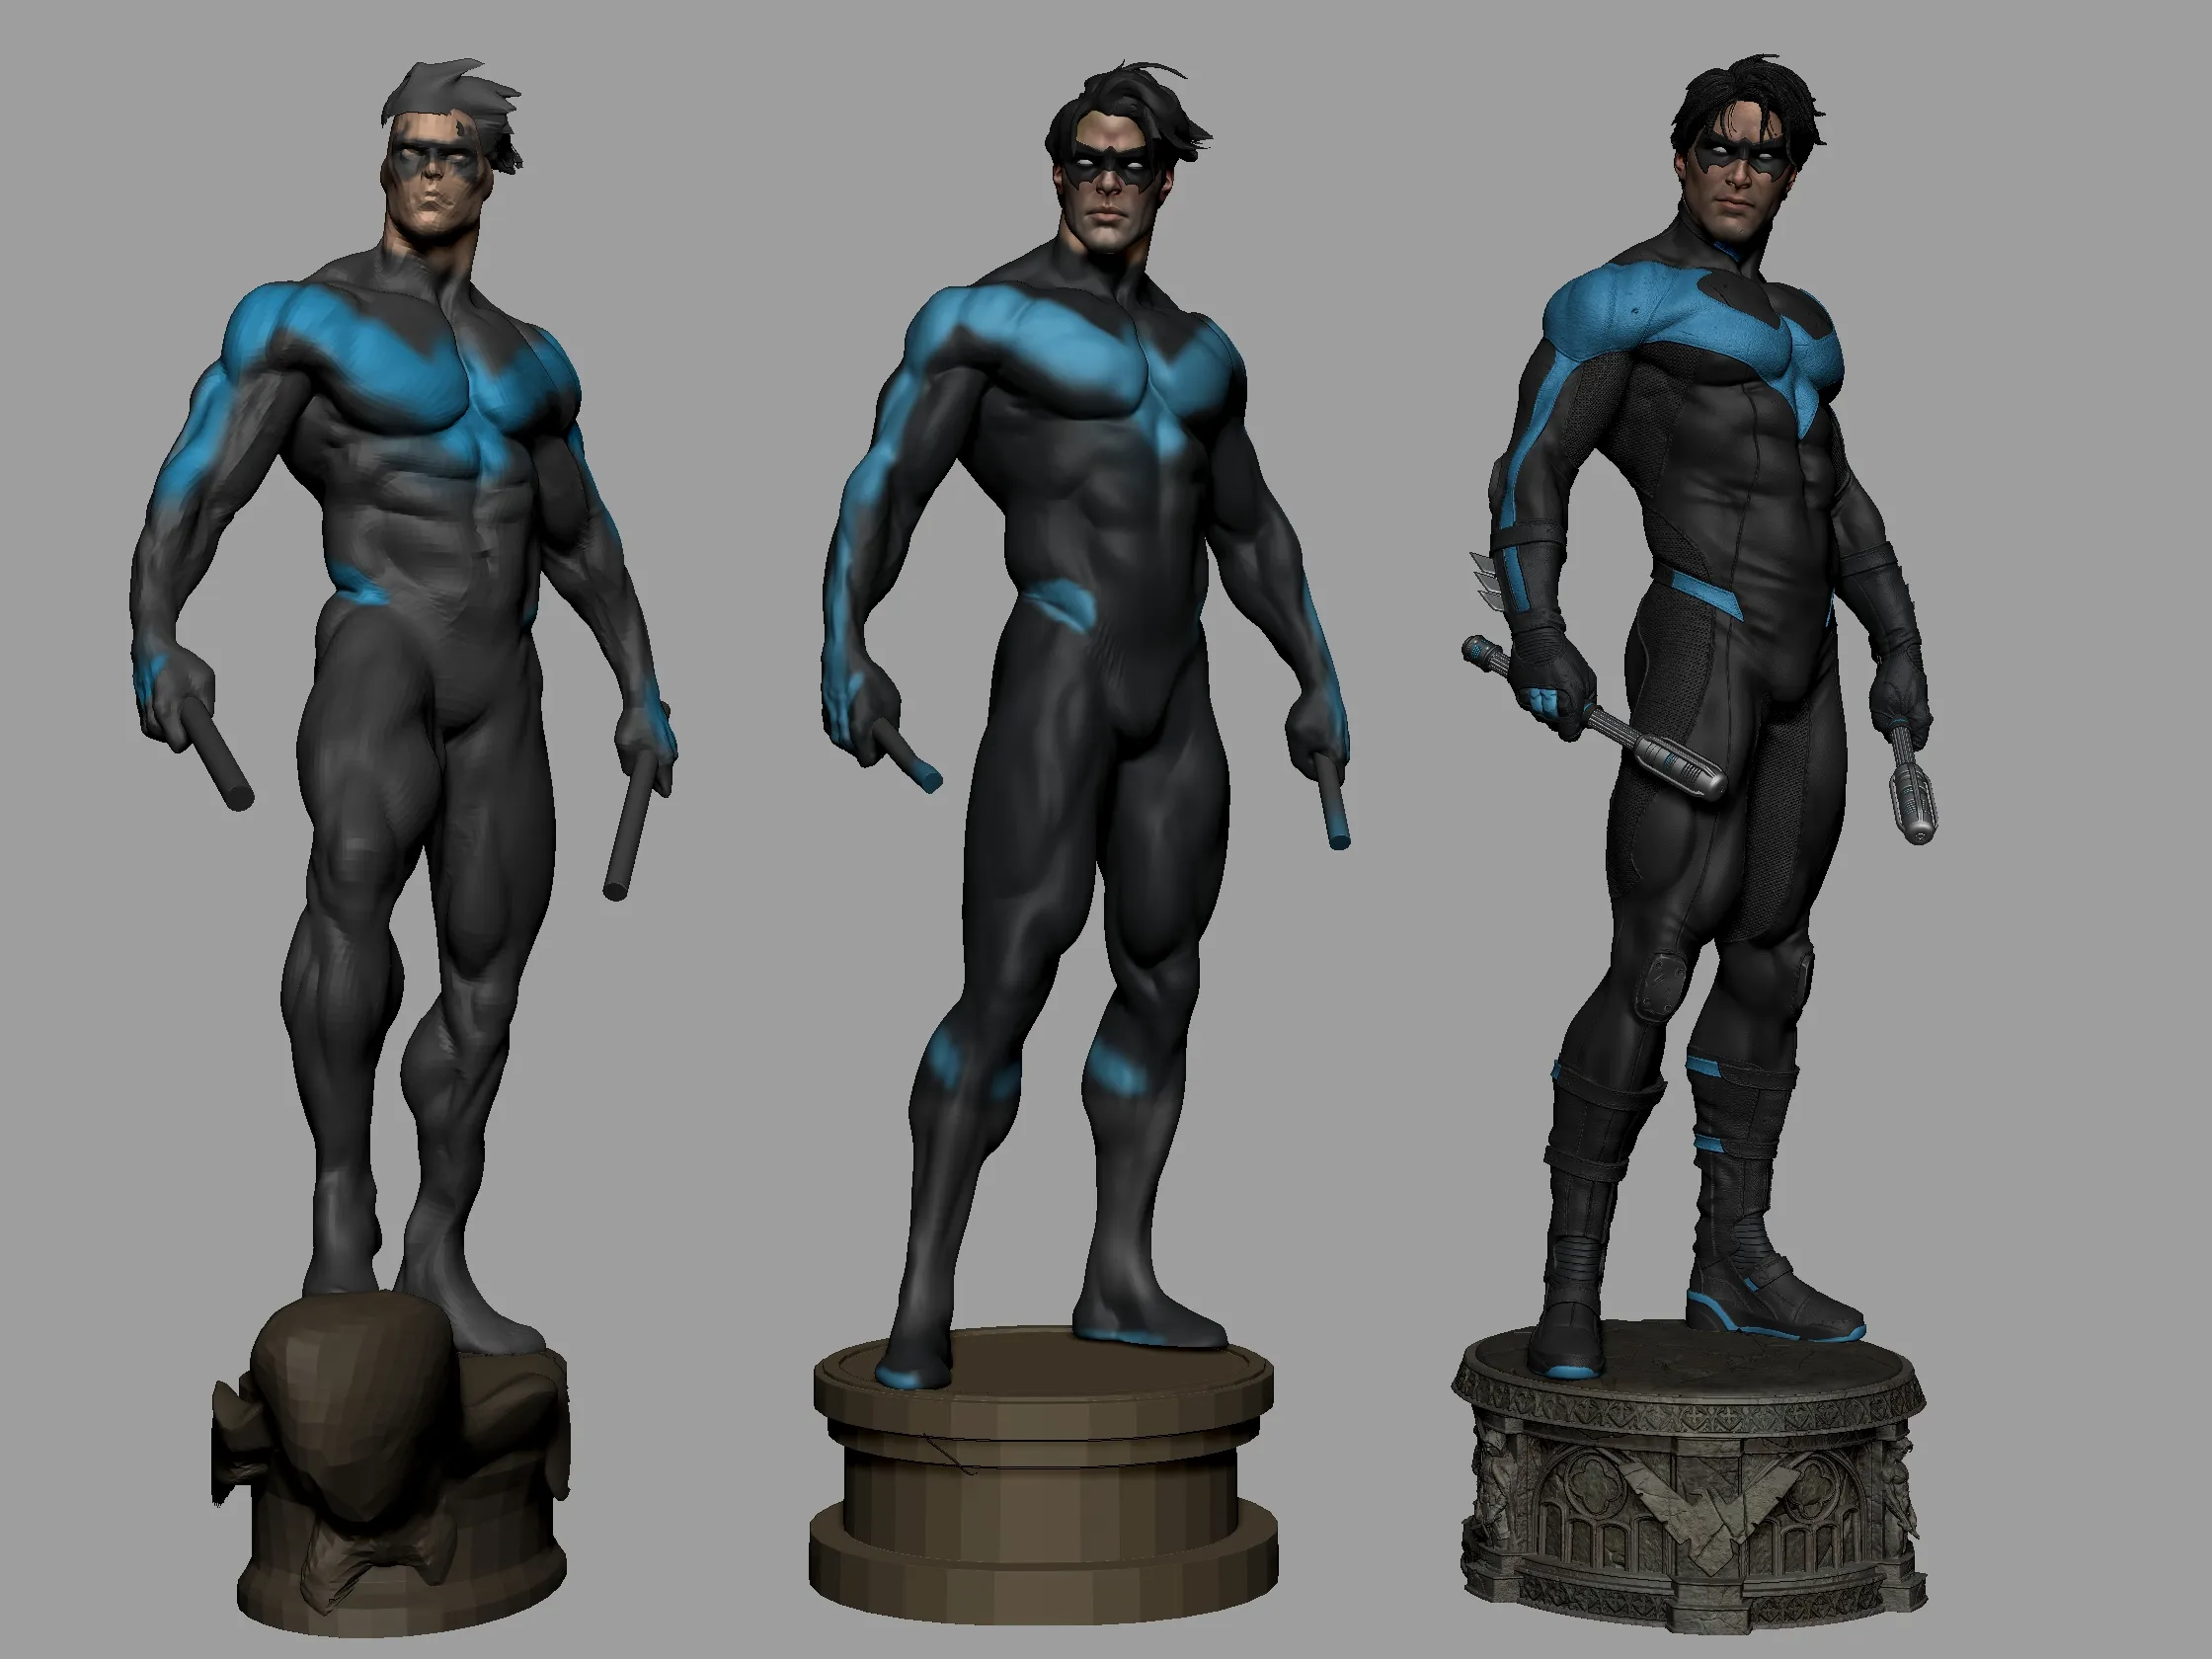 Nightwing - proceso de escultura y texturizado en 3D